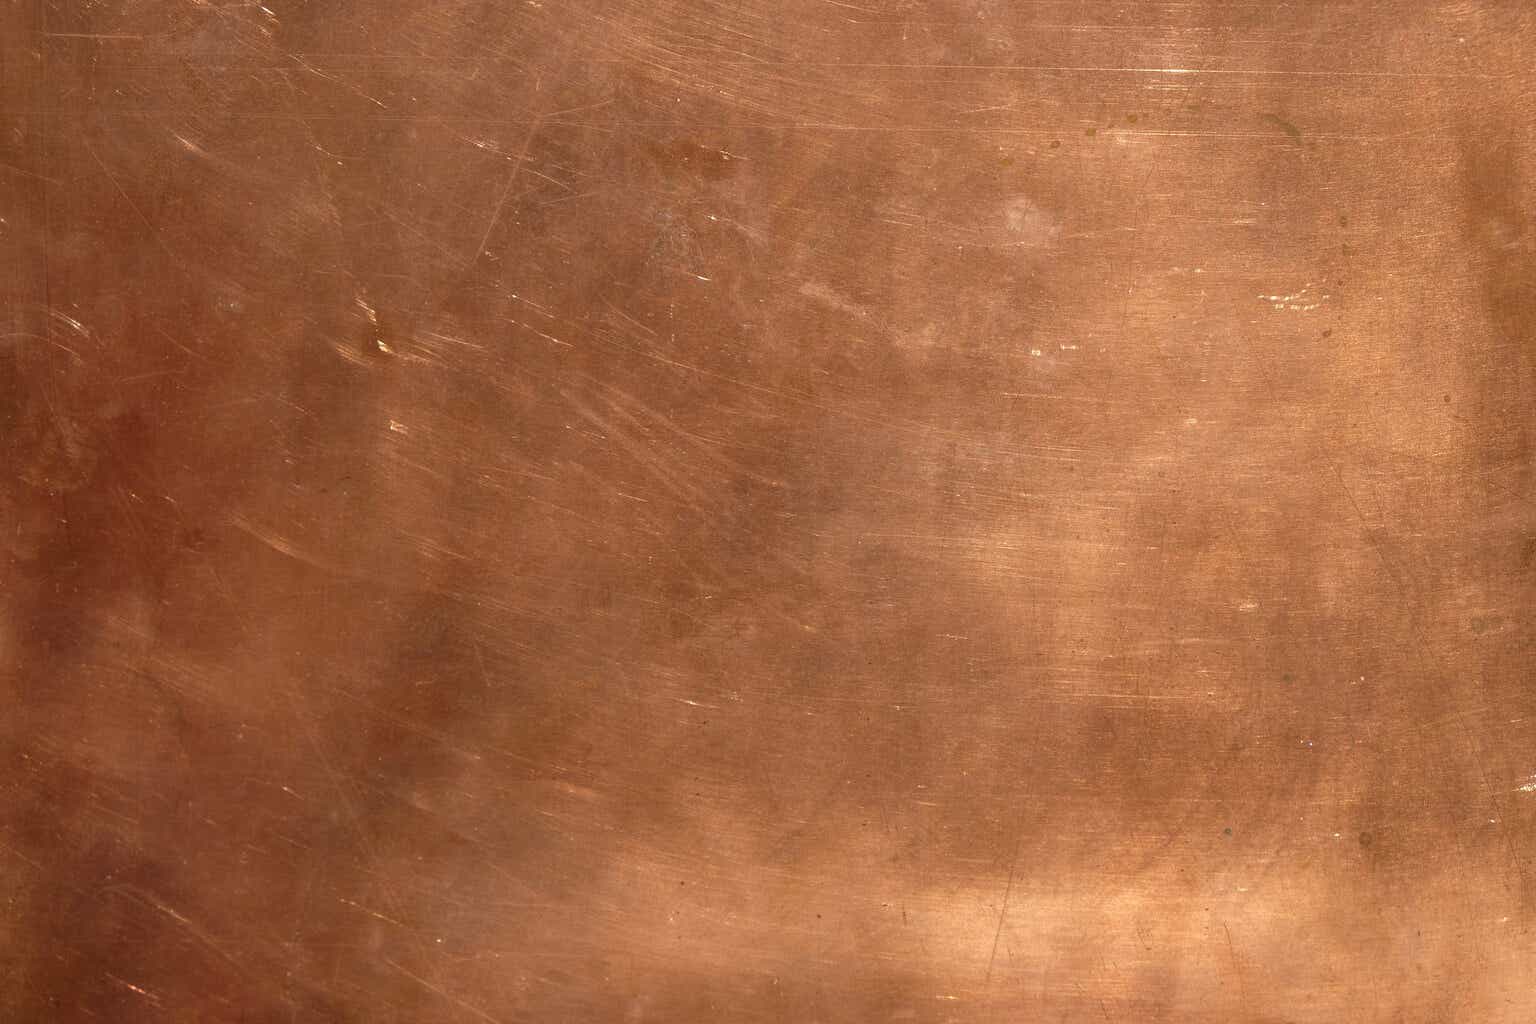 Copper rust цвет фото 27